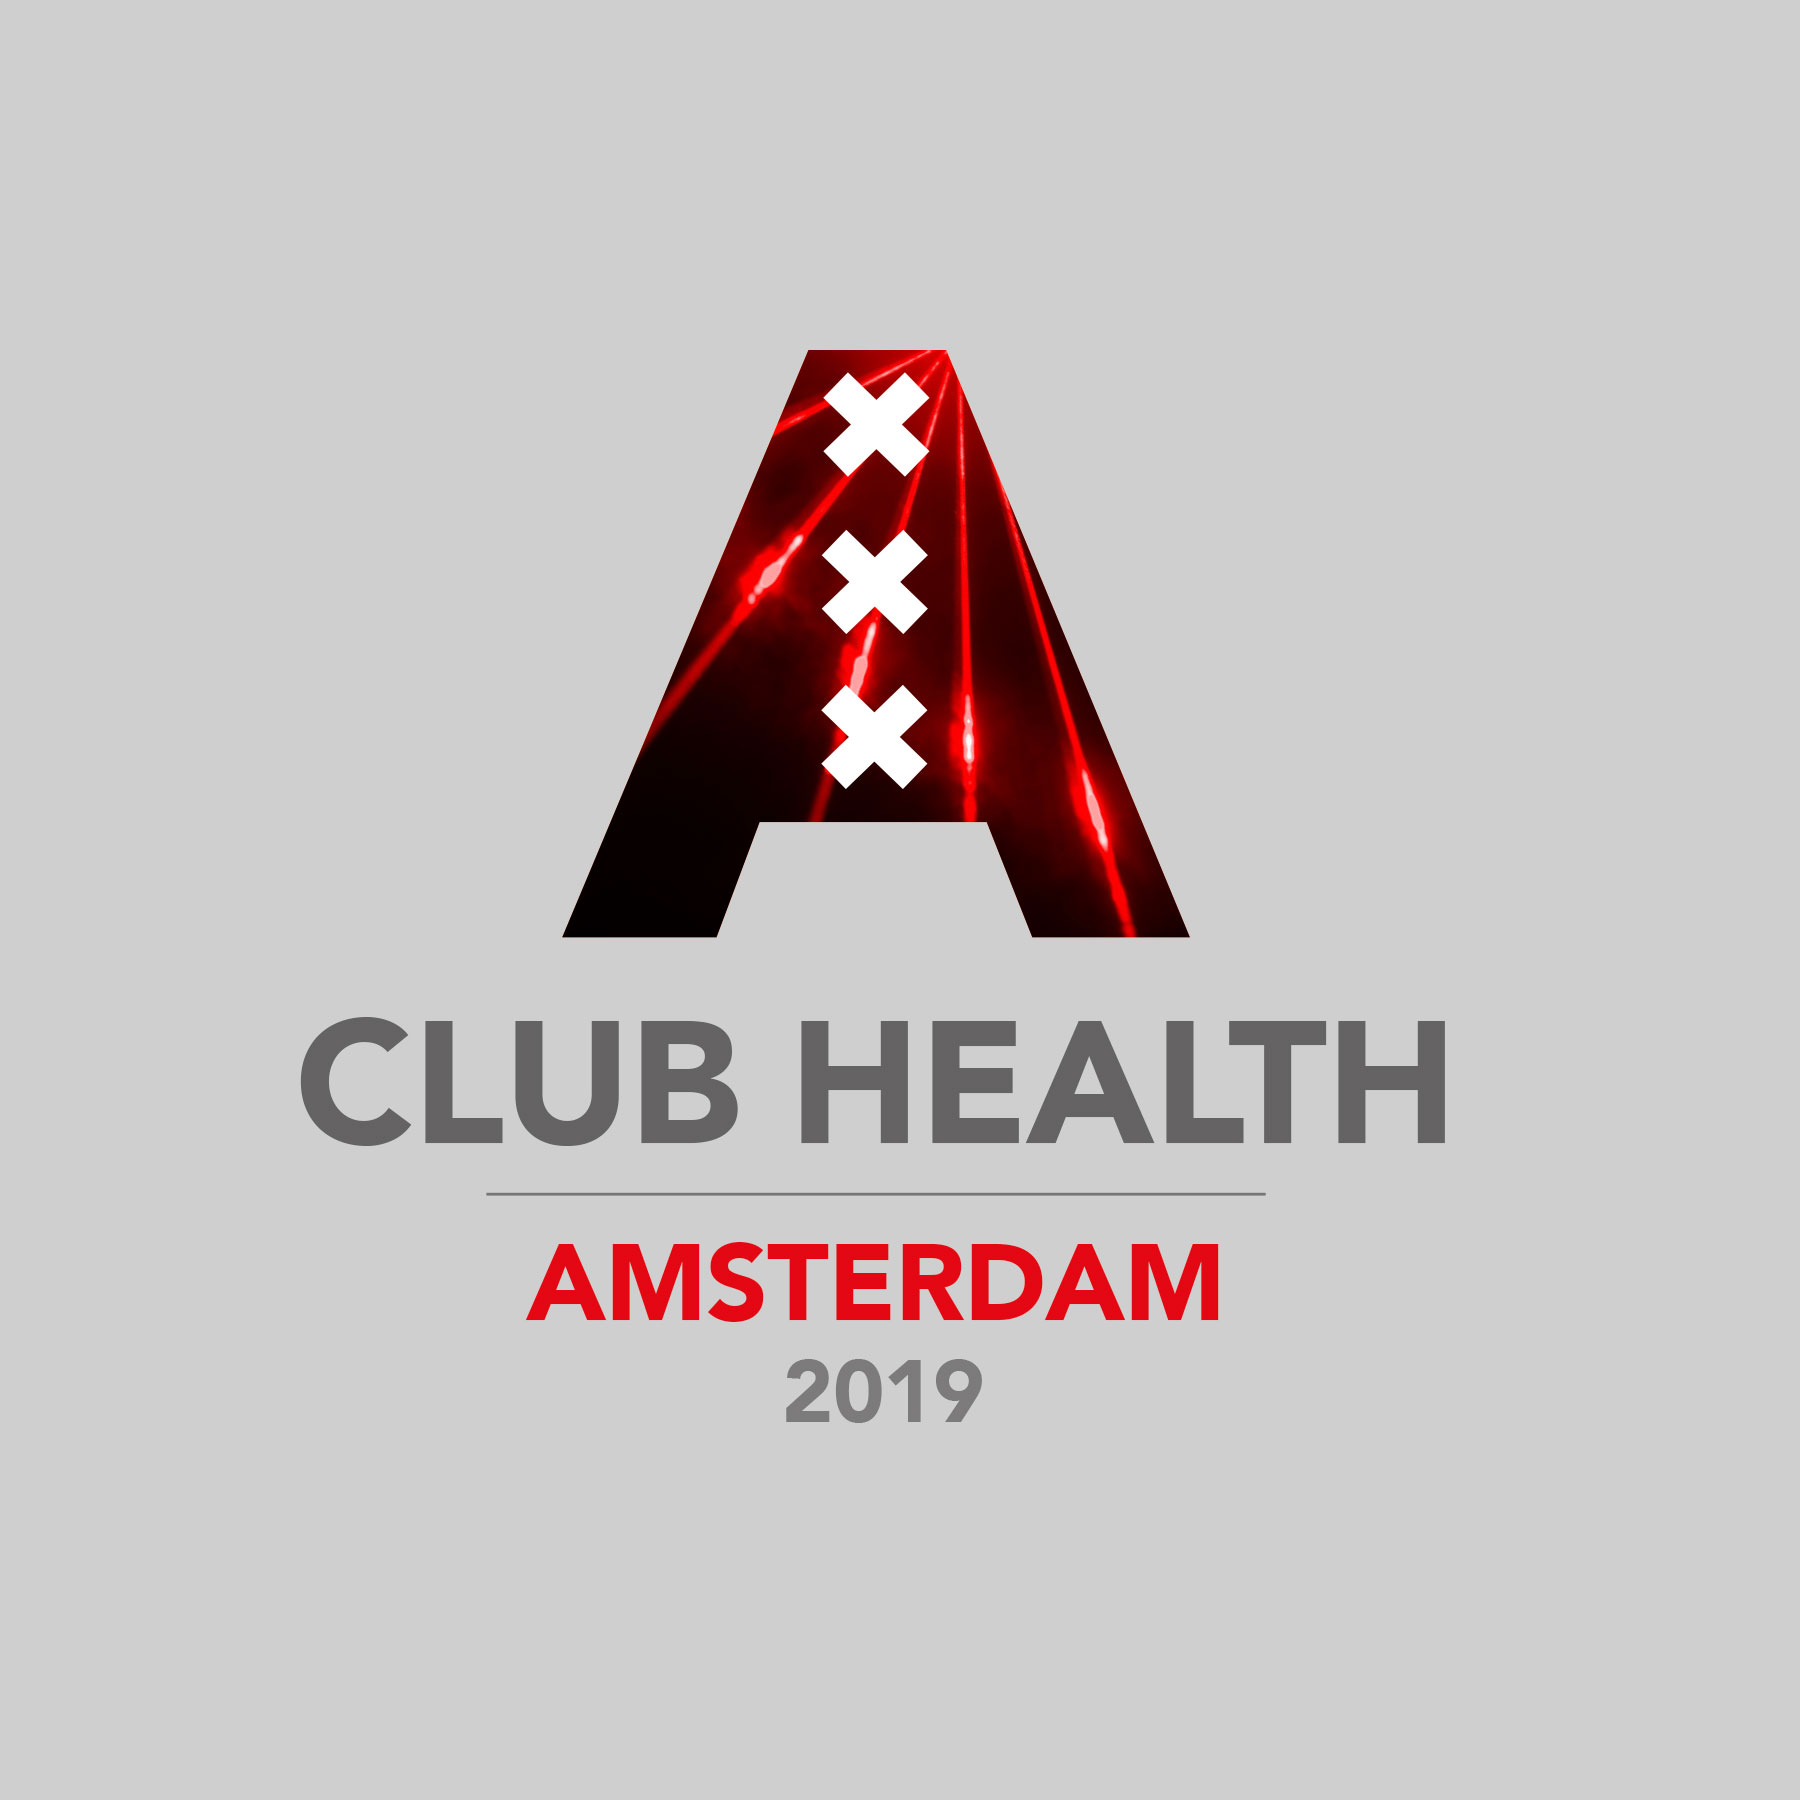 Club Health Amsterdam logo